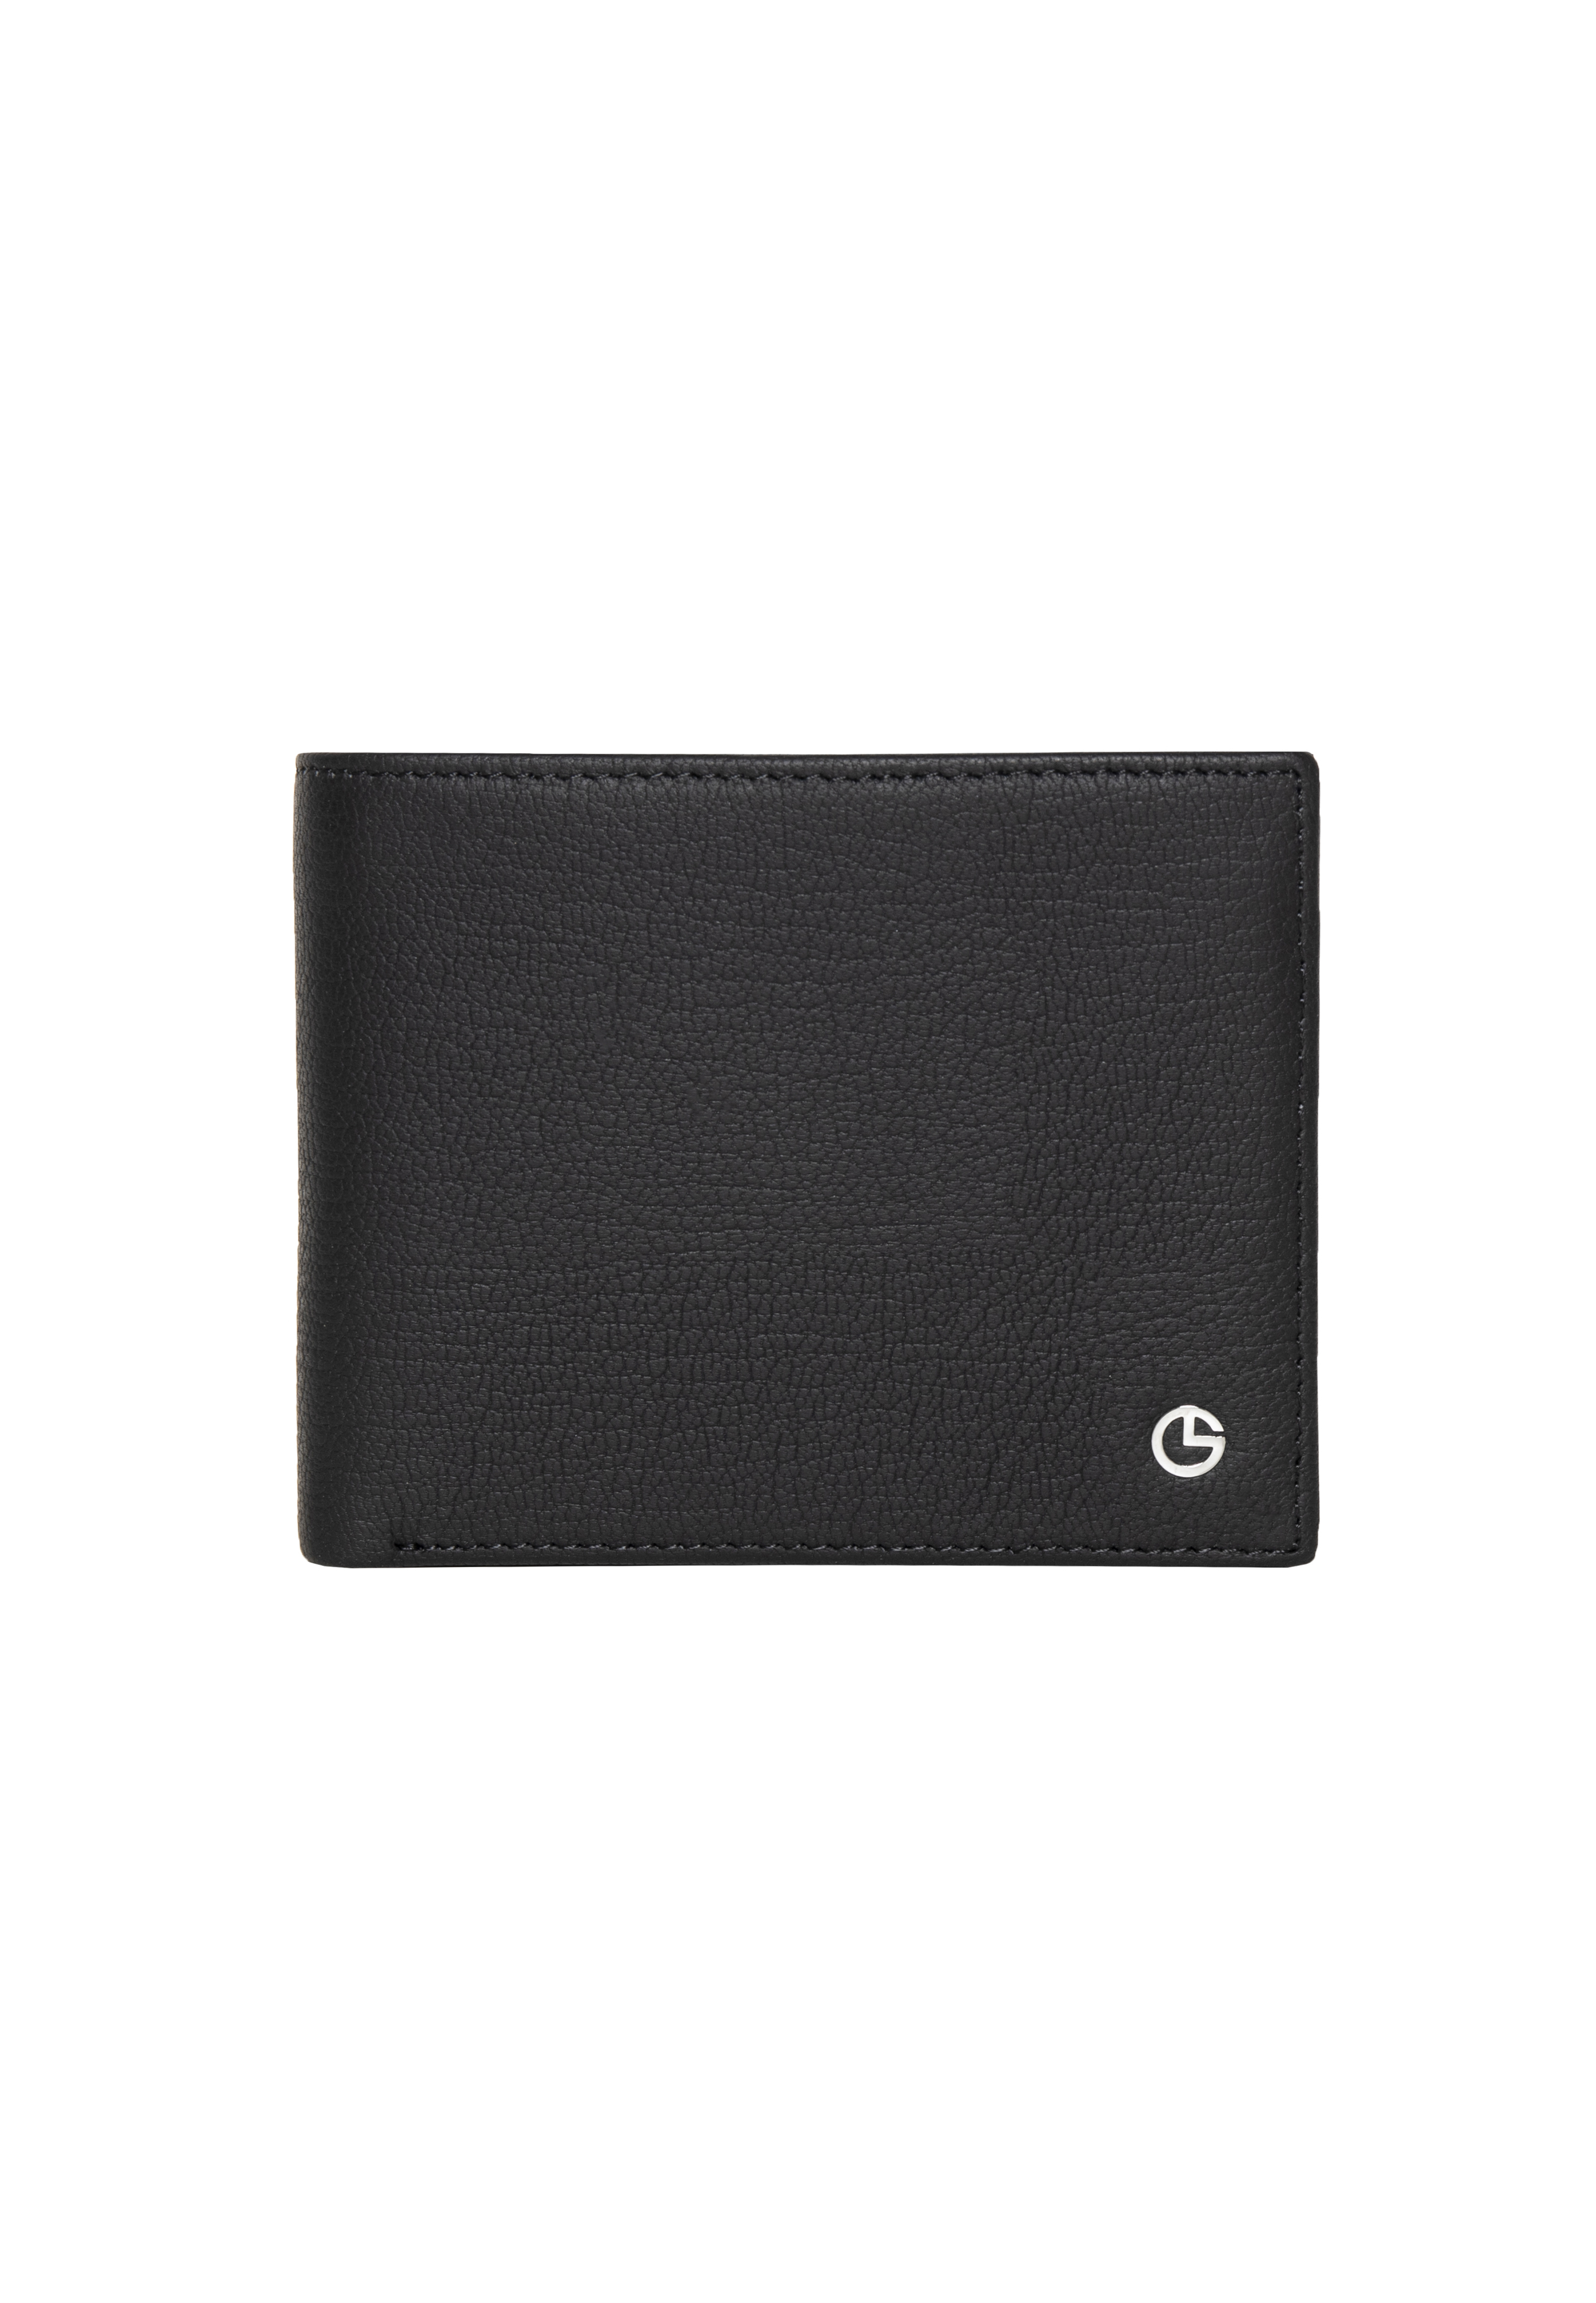 [Online Exclusive] Goldlion Men Genuine Leather Wallet (8 Cards Slot) - Matte Black